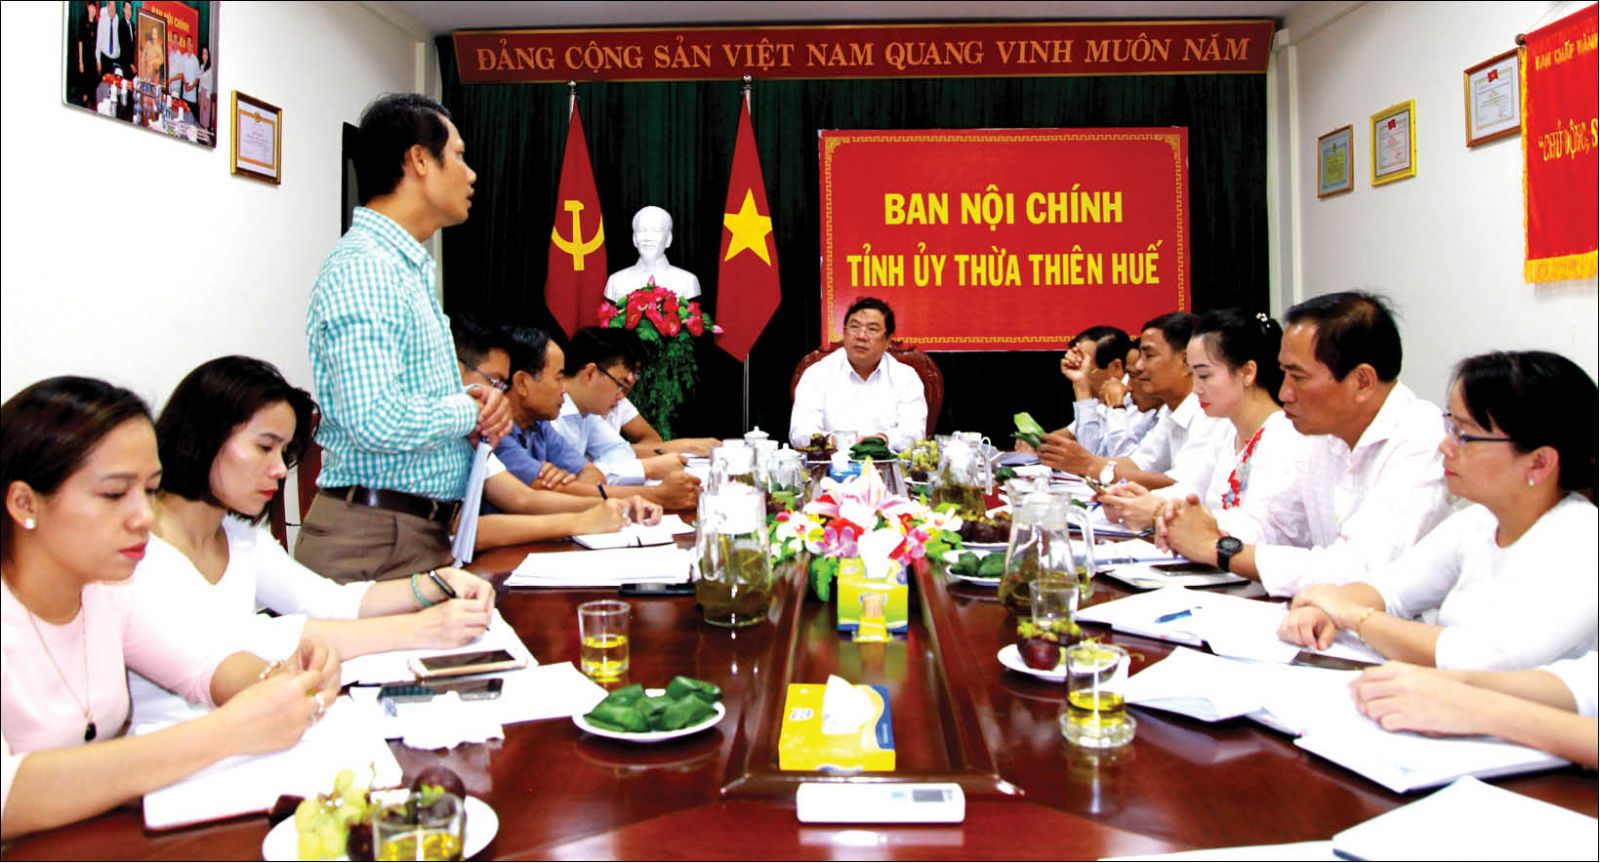 Đồng chí Phạm Gia Túc, Phó trưởng Ban Nội chính Trung ương làm việc với ban Nội chính Tỉnh ủy Thừa Thiên Huế 